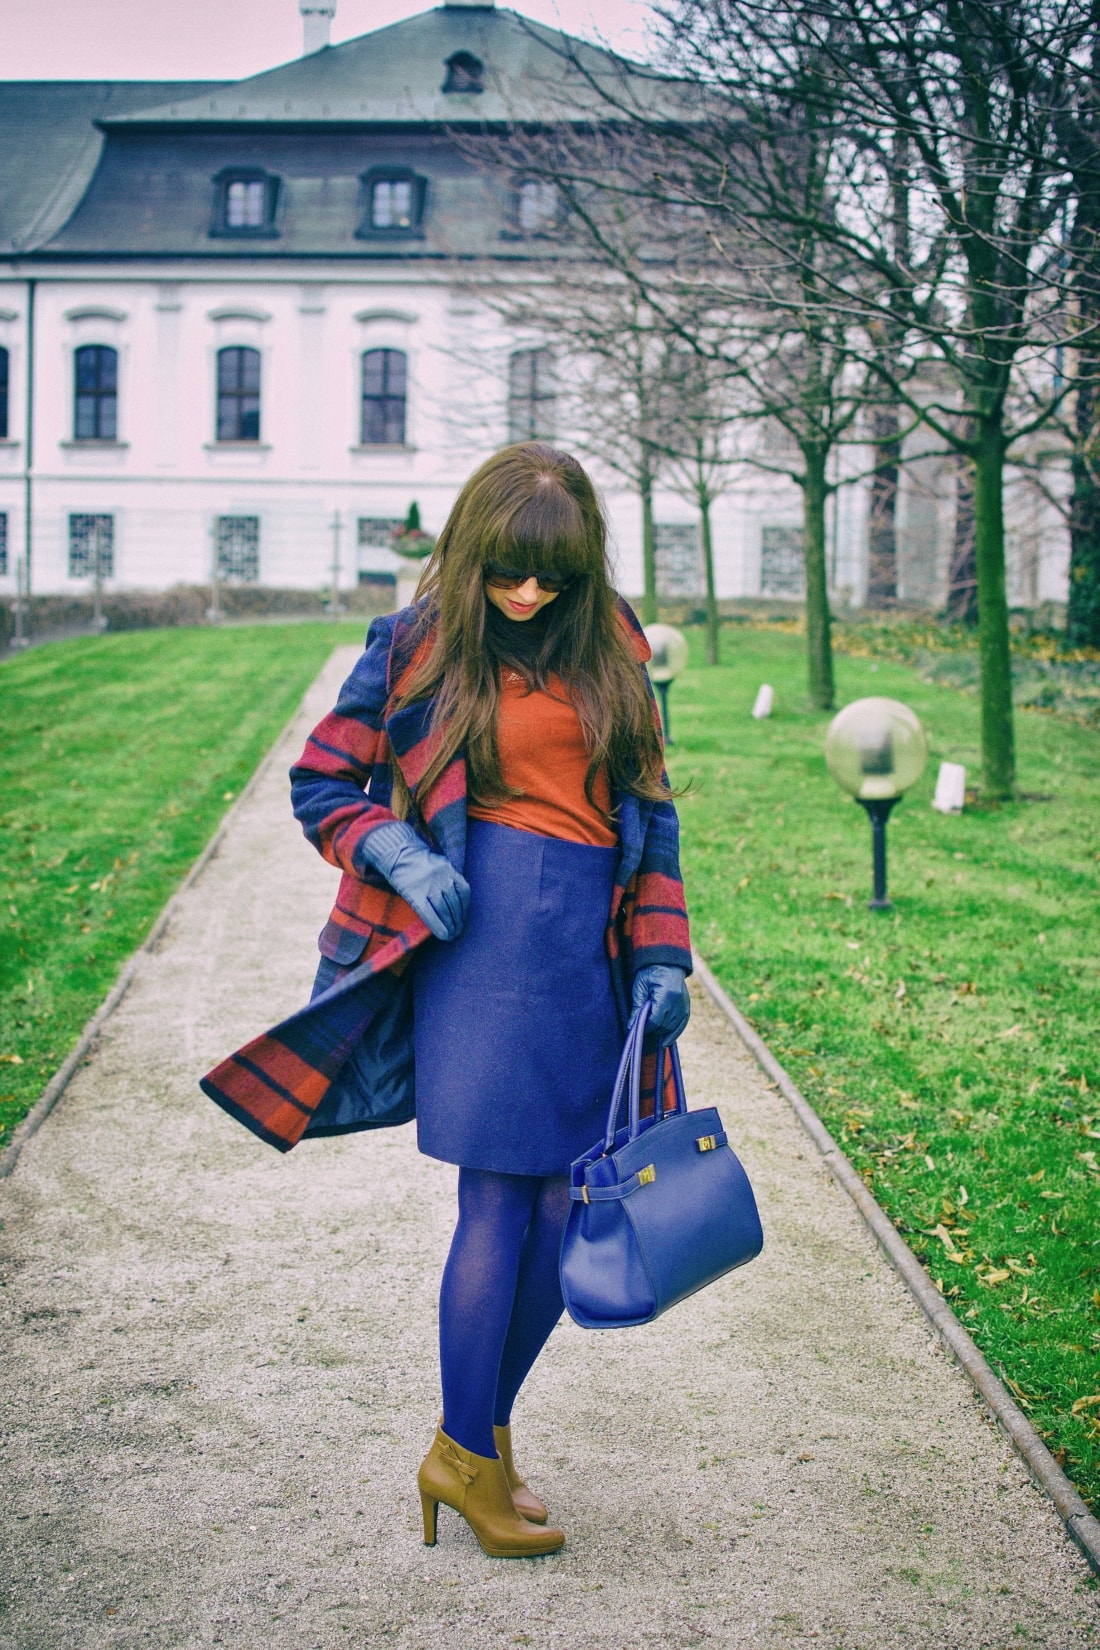 Tvoj osobný upgrade_Katharine-fashion is beautiful_blog 7_vzorovaný kabát_elegancia_bordovomodrá_Katarína Jakubčová_Fashion blogger